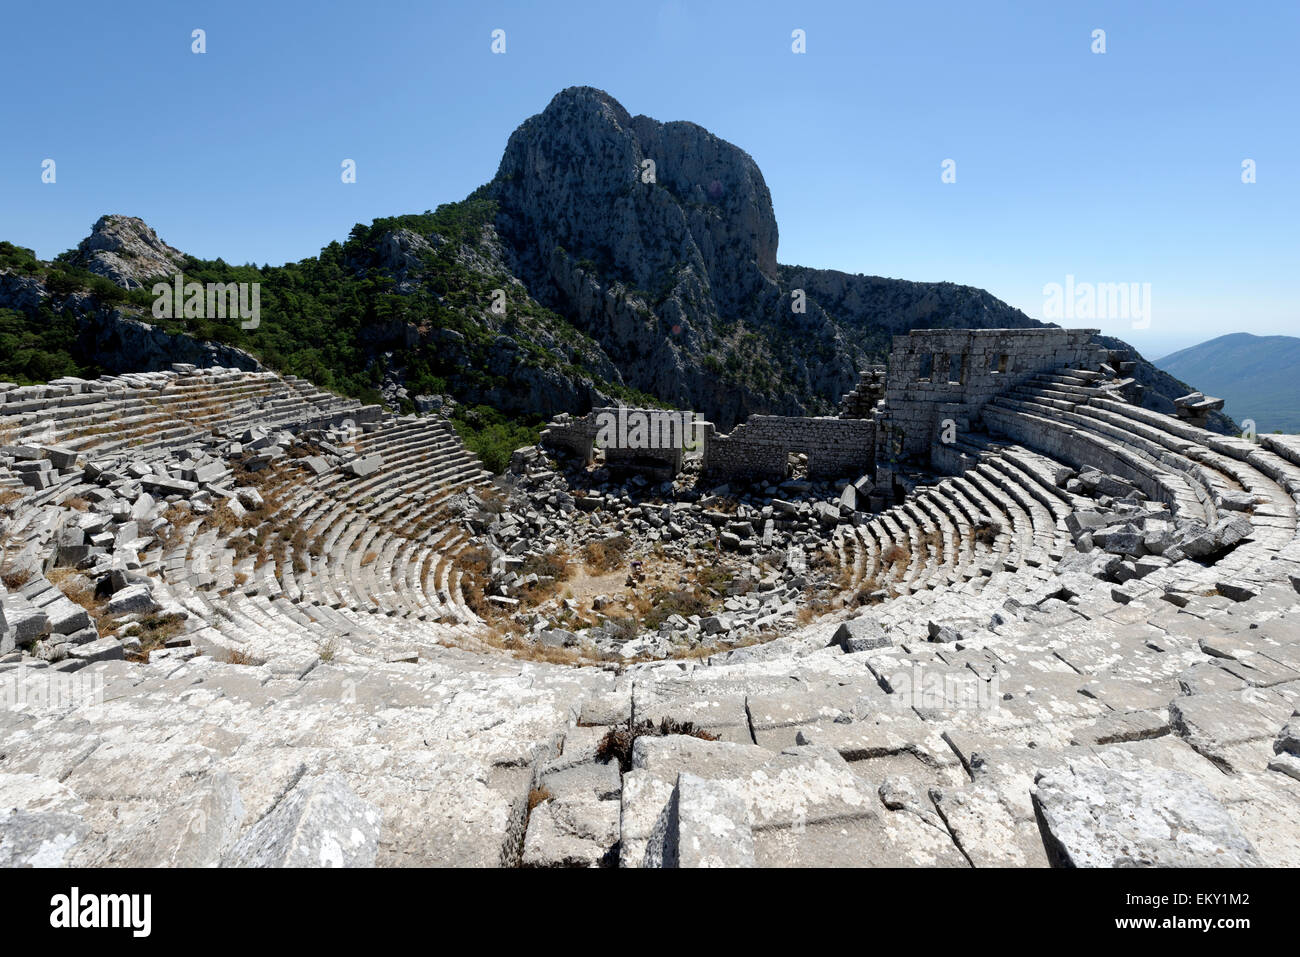 Il Greco antico in stile teatro, costruito nel periodo ellenistico e rinnovato nel corso dell'epoca romana. Termessos, nella Turchia meridionale. Th Foto Stock